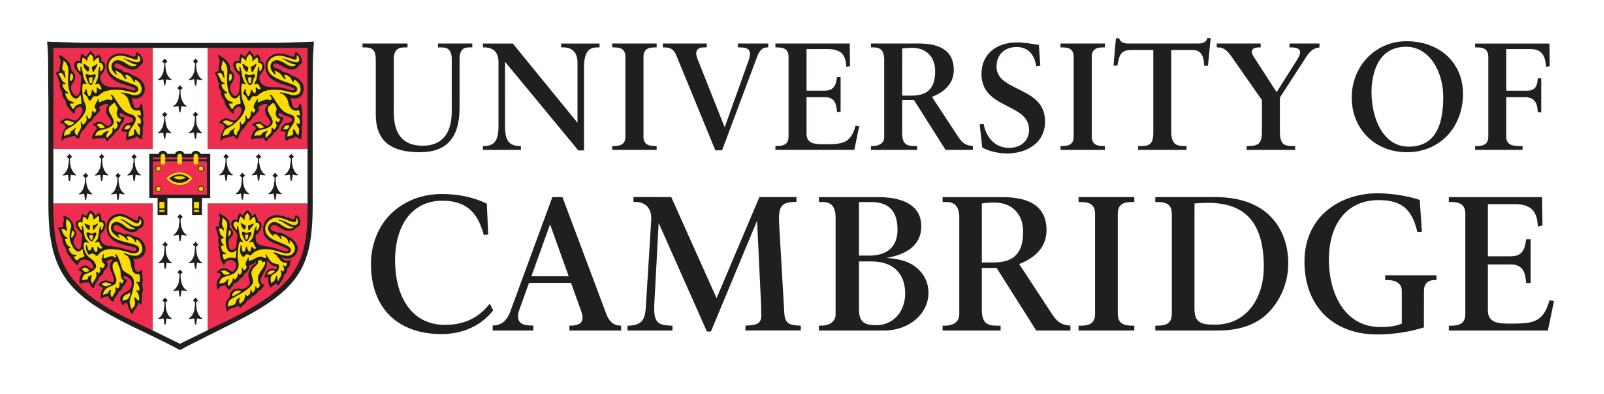 University of cambridge logo.wine